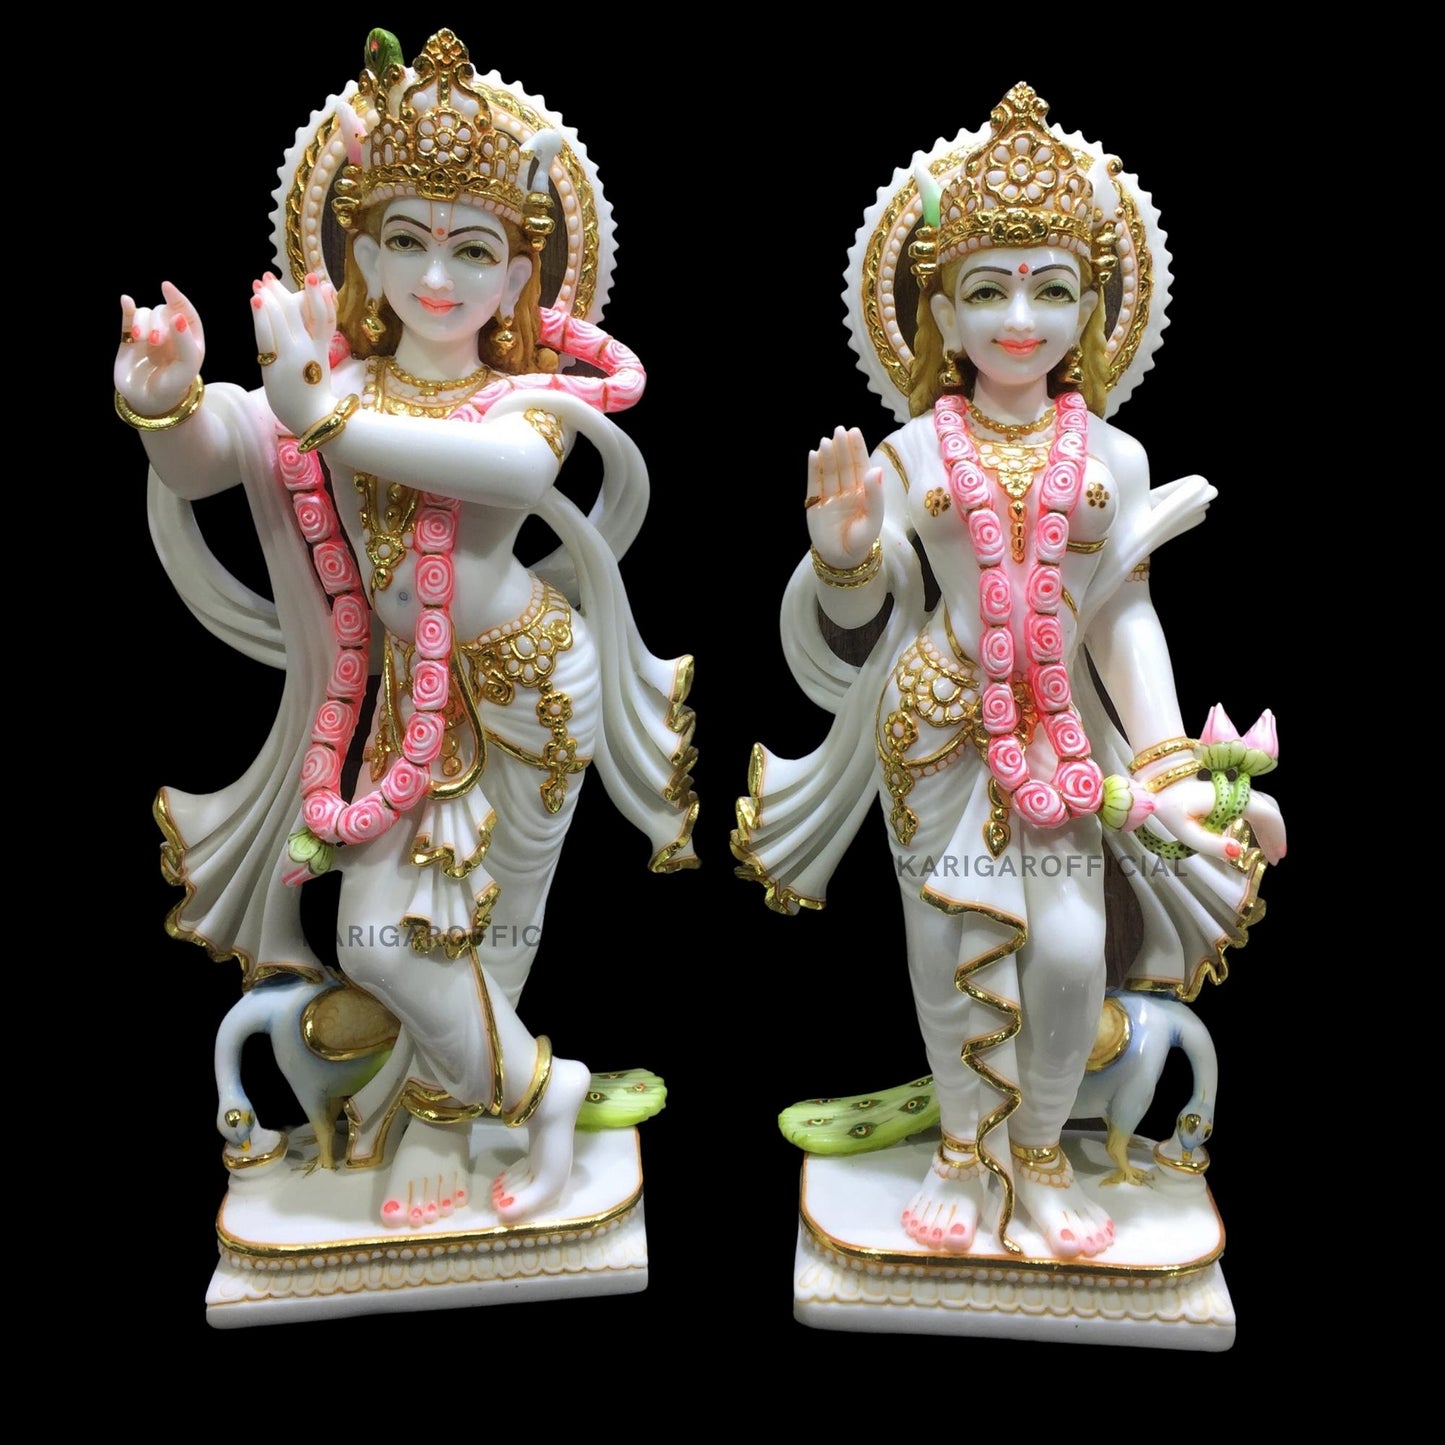 Estatua de Radha Krishna, estatuilla de trabajo de hoja de oro, ídolo grande de Radha Krishna de mármol de 24 pulgadas, pareja divina hindú Murti pintada a mano, decoración de Pooja del templo del hogar, escultura de regalos de inauguración de la casa